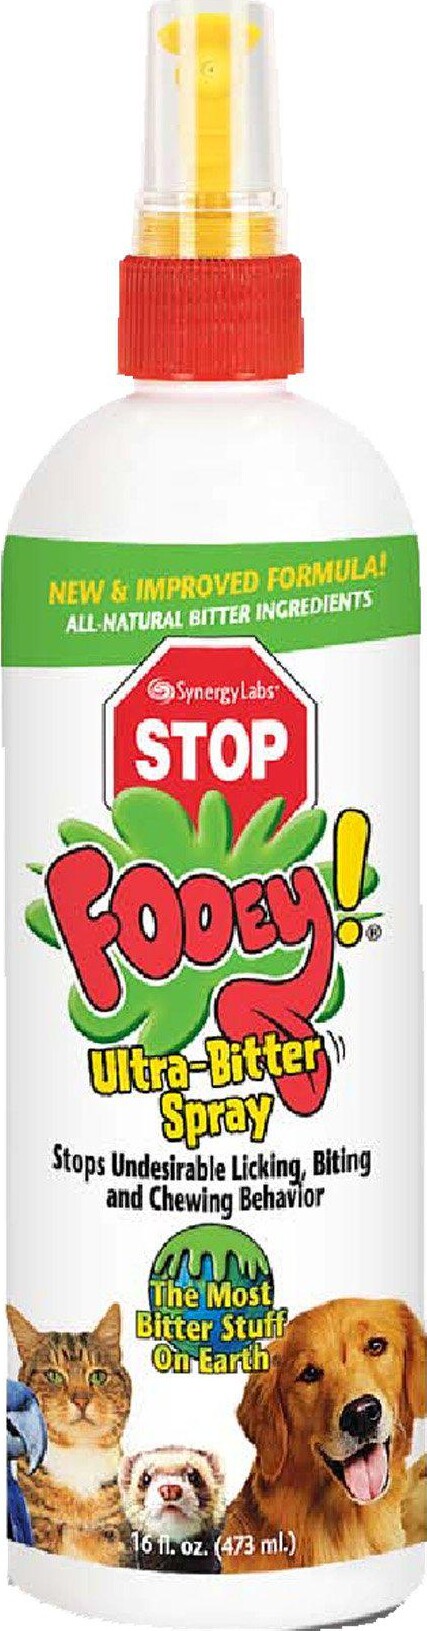 Fooey - Ultra Bitter Spray - Anti-tygge Spray Til Dyr | Se og køb på